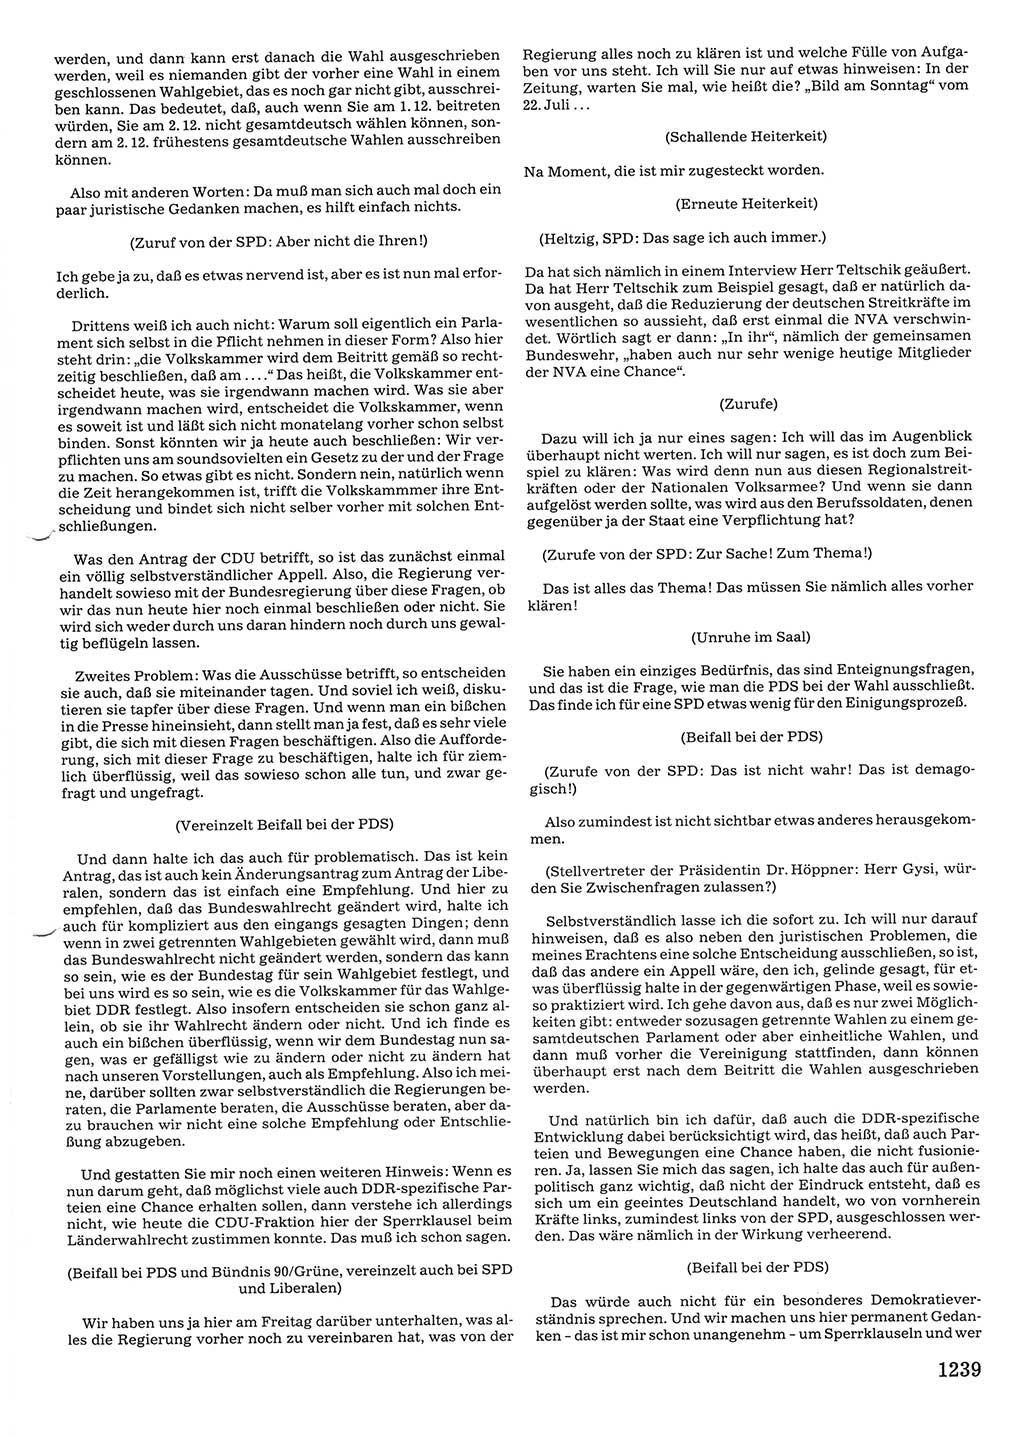 Tagungen der Volkskammer (VK) der Deutschen Demokratischen Republik (DDR), 10. Wahlperiode 1990, Seite 1239 (VK. DDR 10. WP. 1990, Prot. Tg. 1-38, 5.4.-2.10.1990, S. 1239)